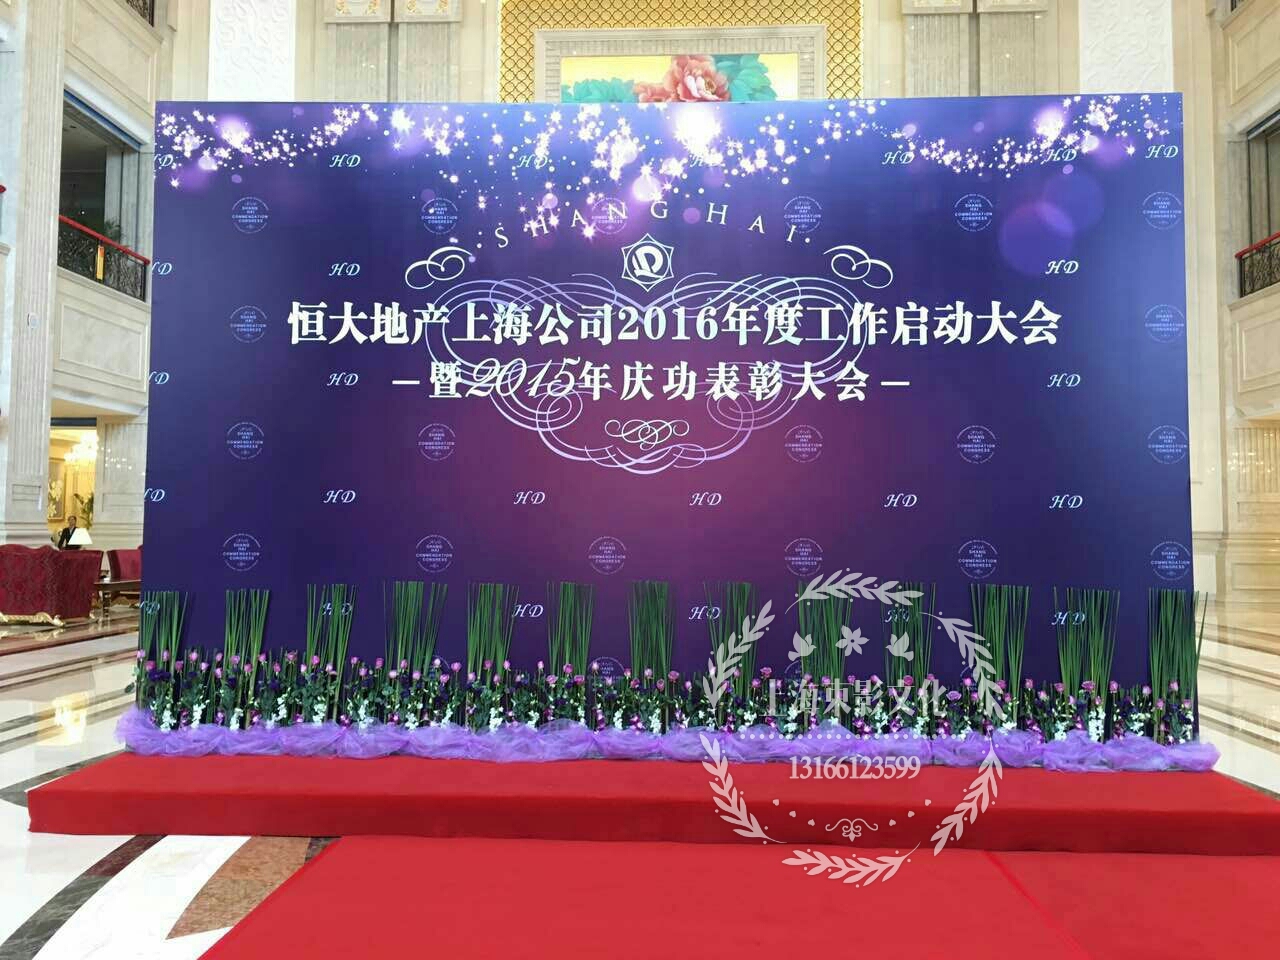 上海喷绘写真制作背景板签到板制作搭建桁架租赁搭建公司